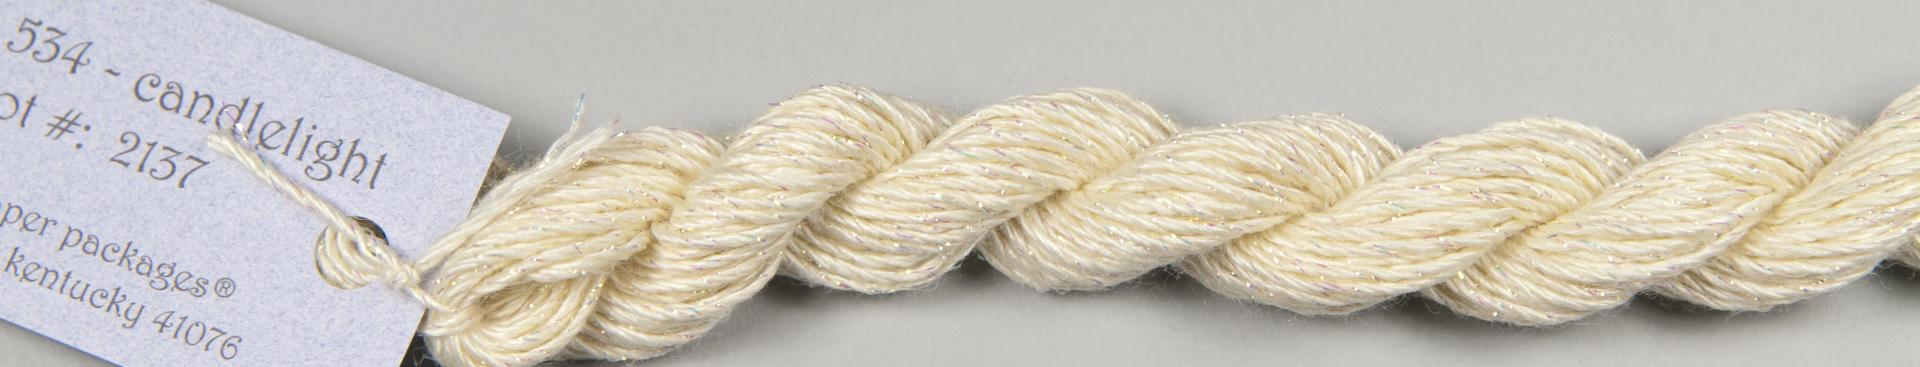 Silk & Ivory STARDUST Threads